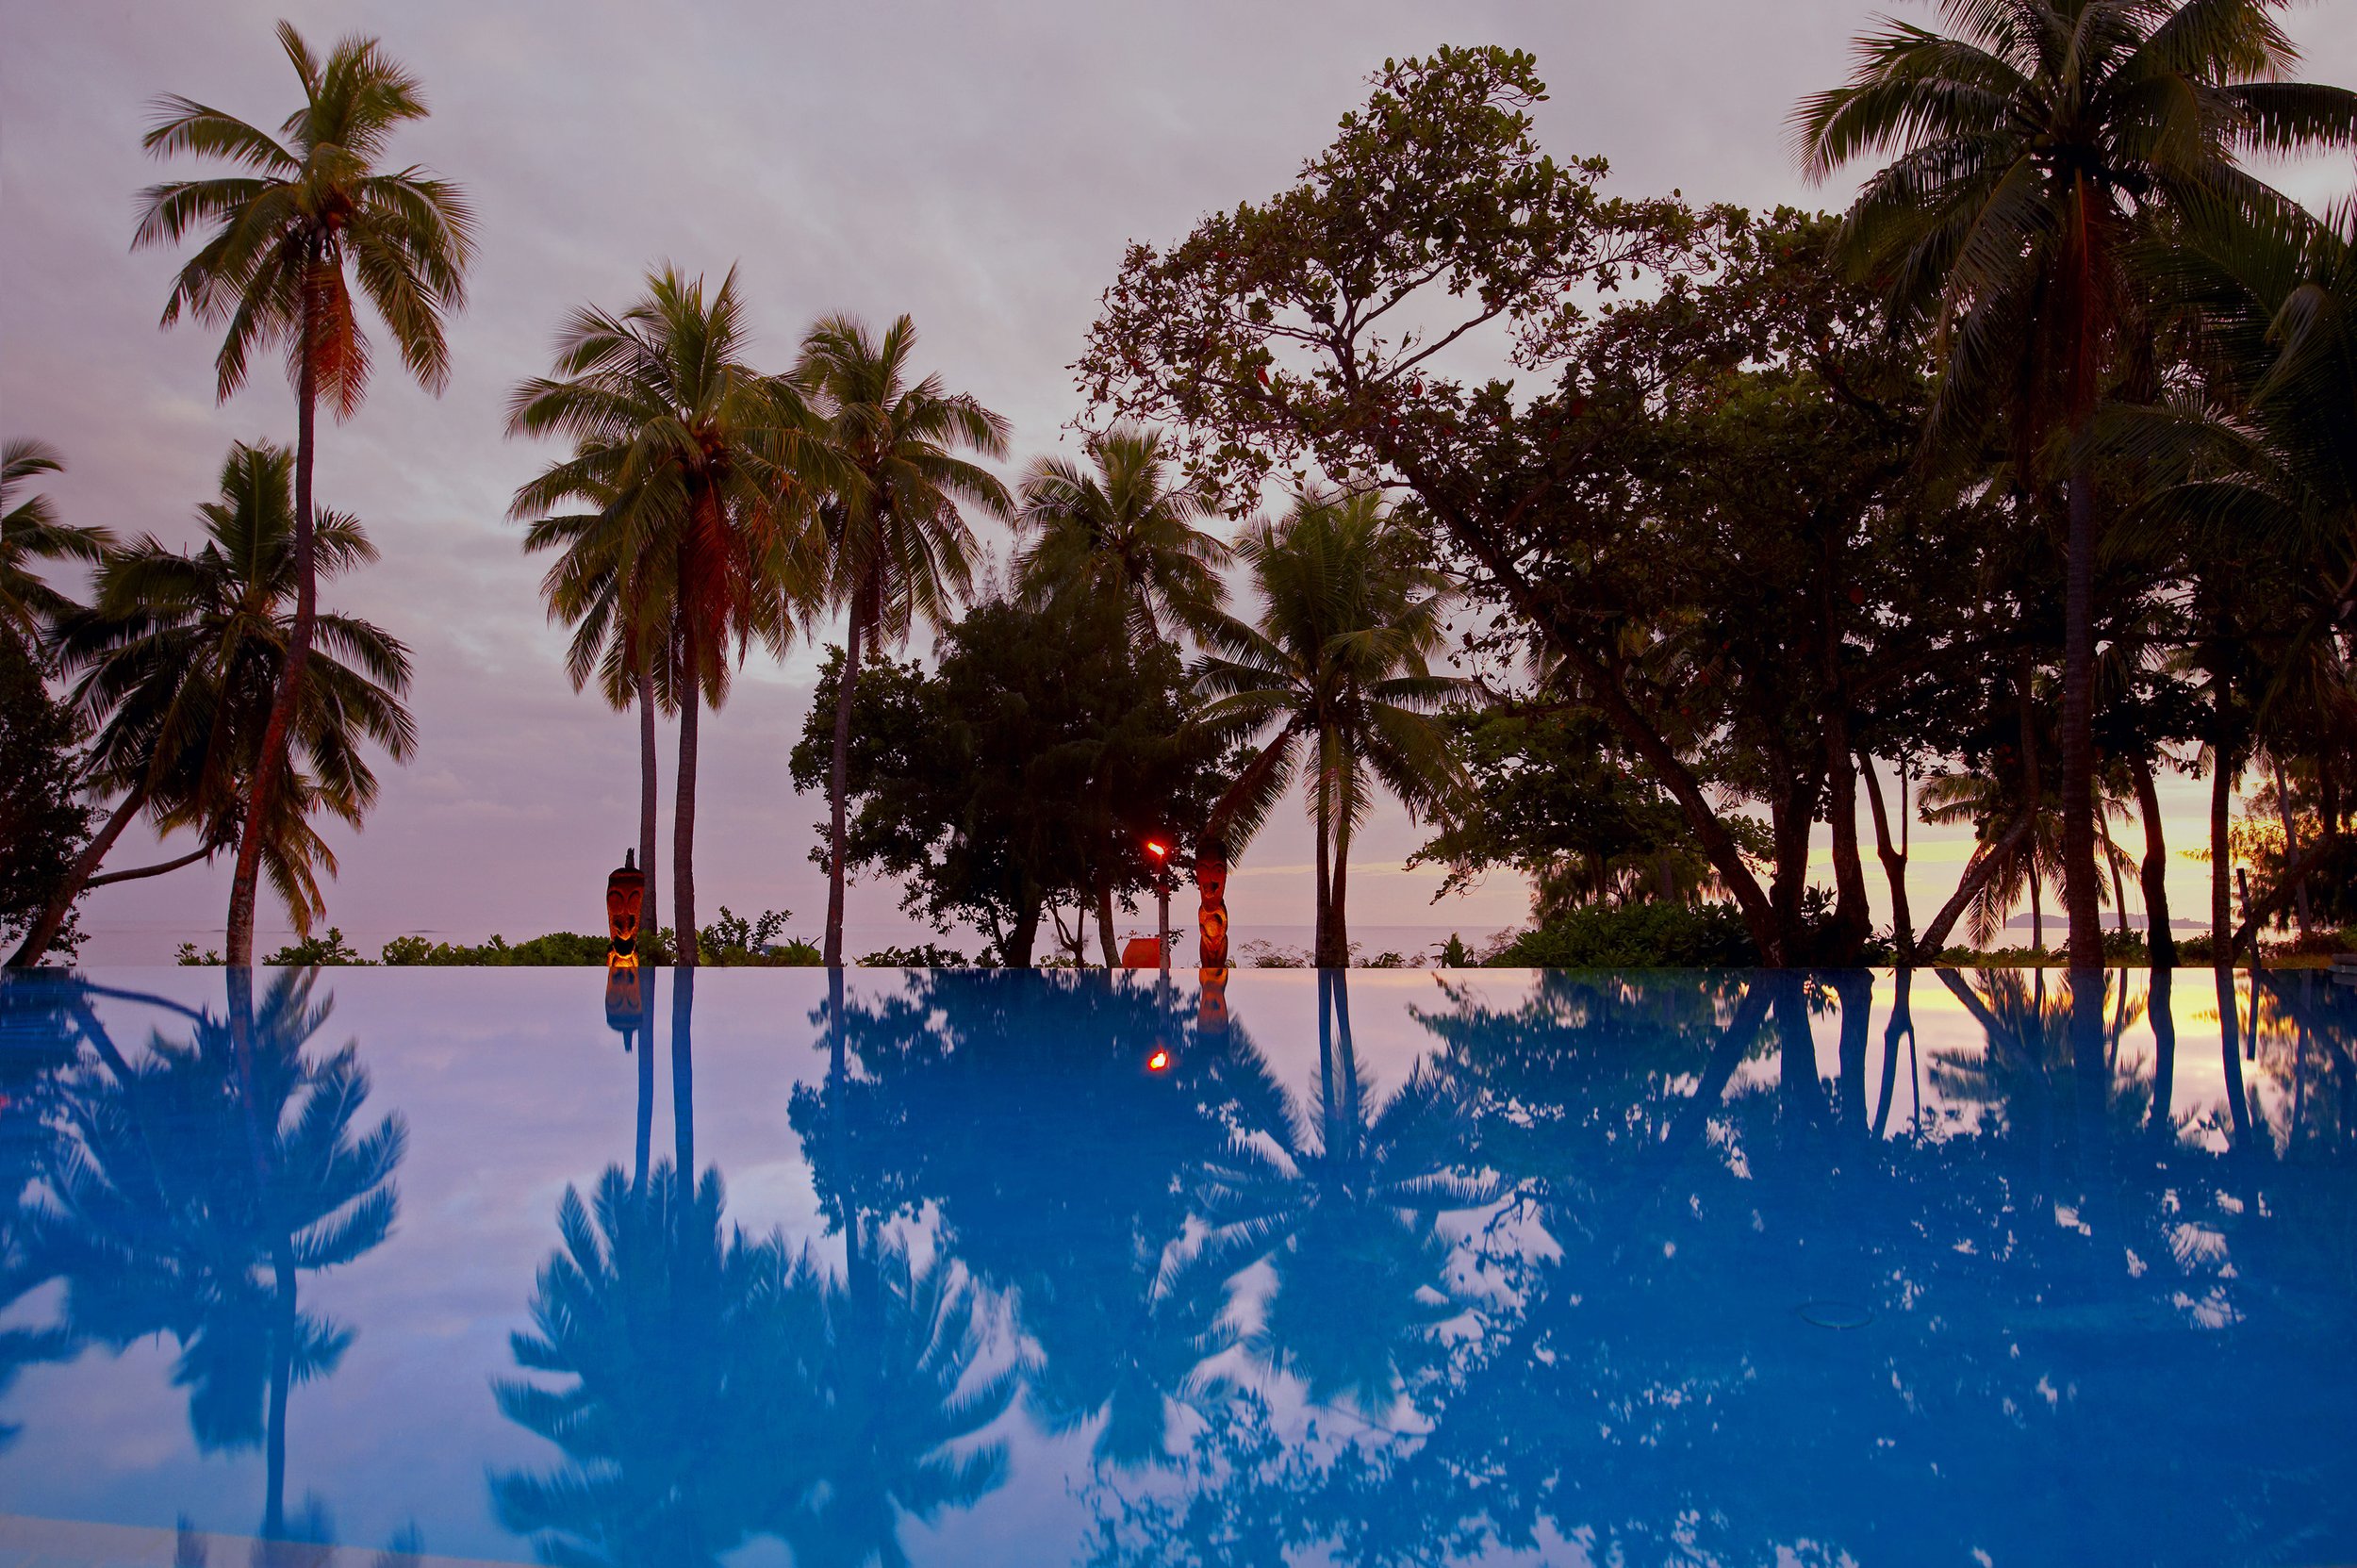 Fiji, Yasawa Island Resort: fuga in un angolo di paradiso in Polinesia!